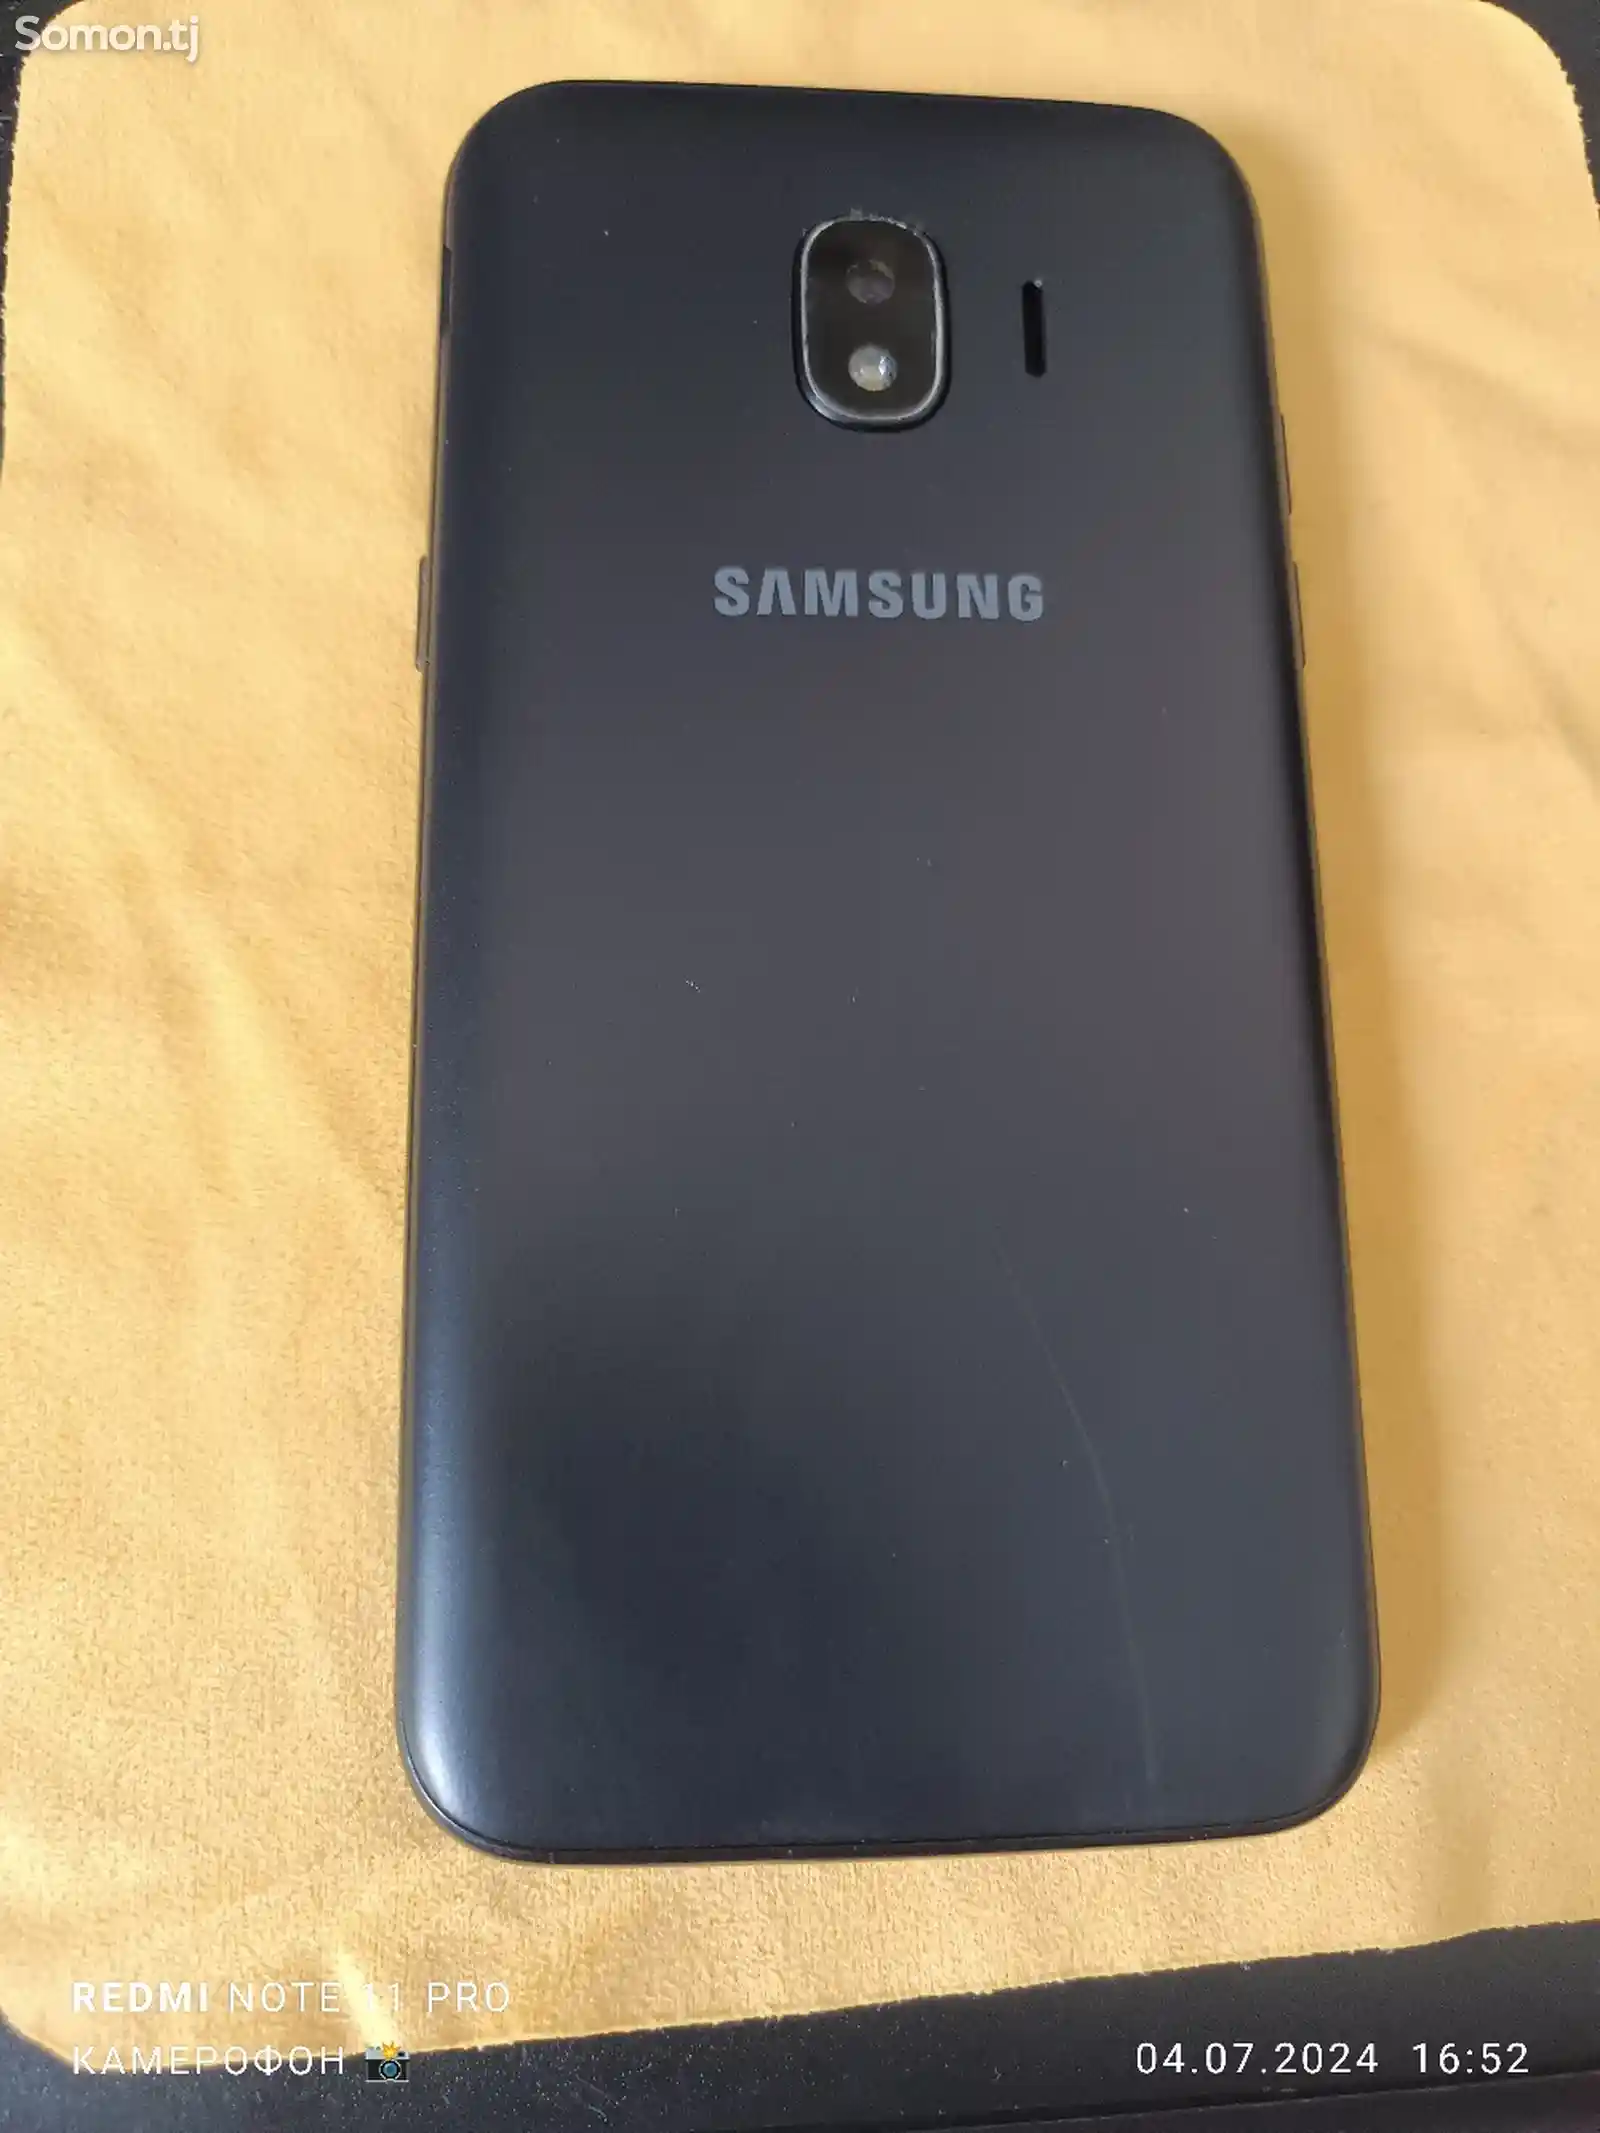 Samsung Galaxy Grand prime pro 16gb-1